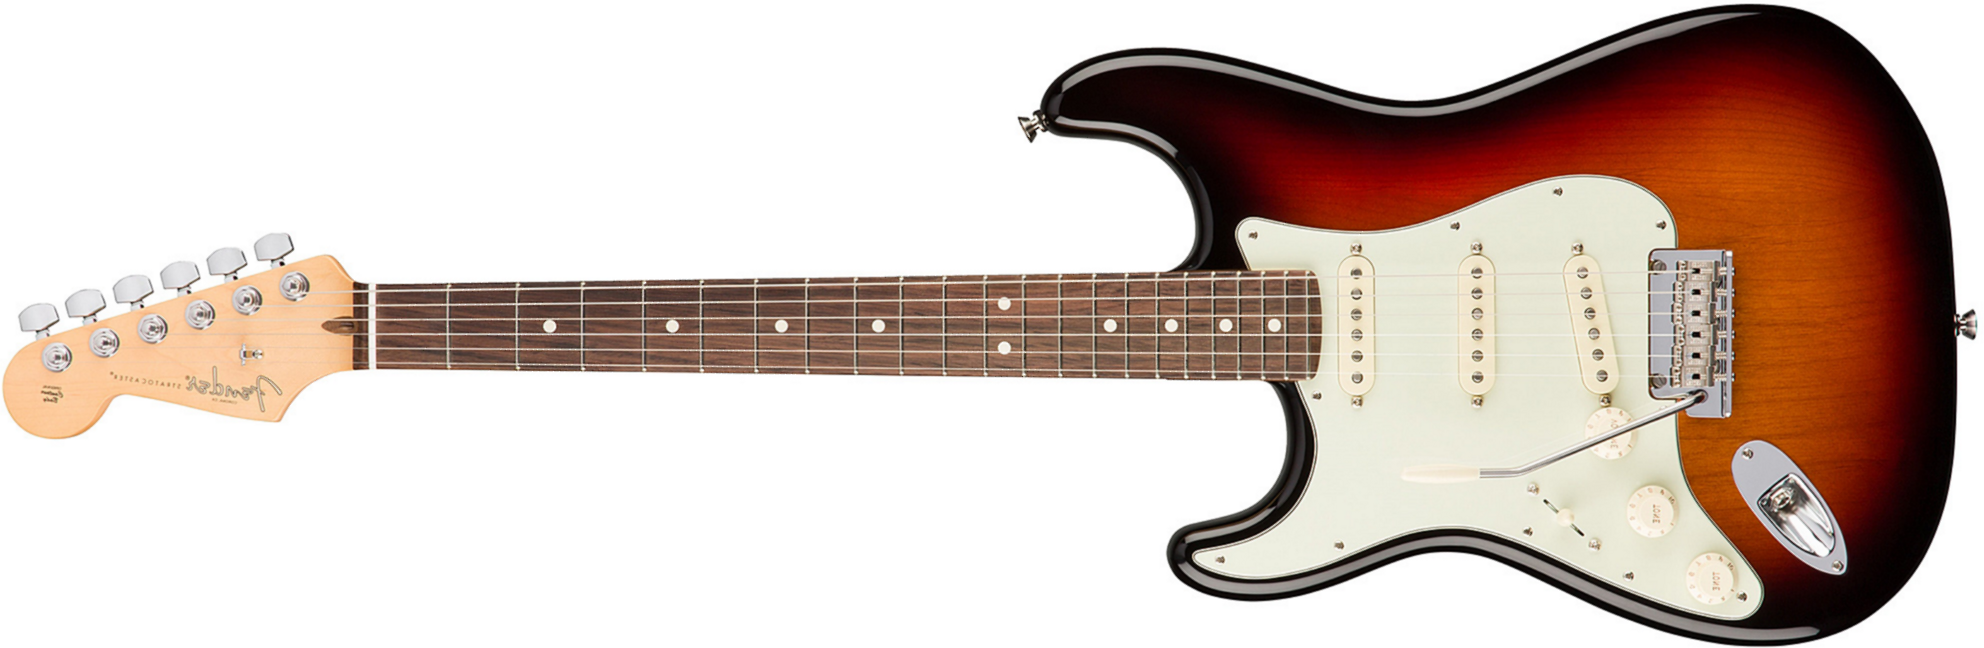 Fender Strat American Professional Lh Usa Gaucher 3s Rw - 3-color Sunburst - Linkshandige elektrische gitaar - Main picture